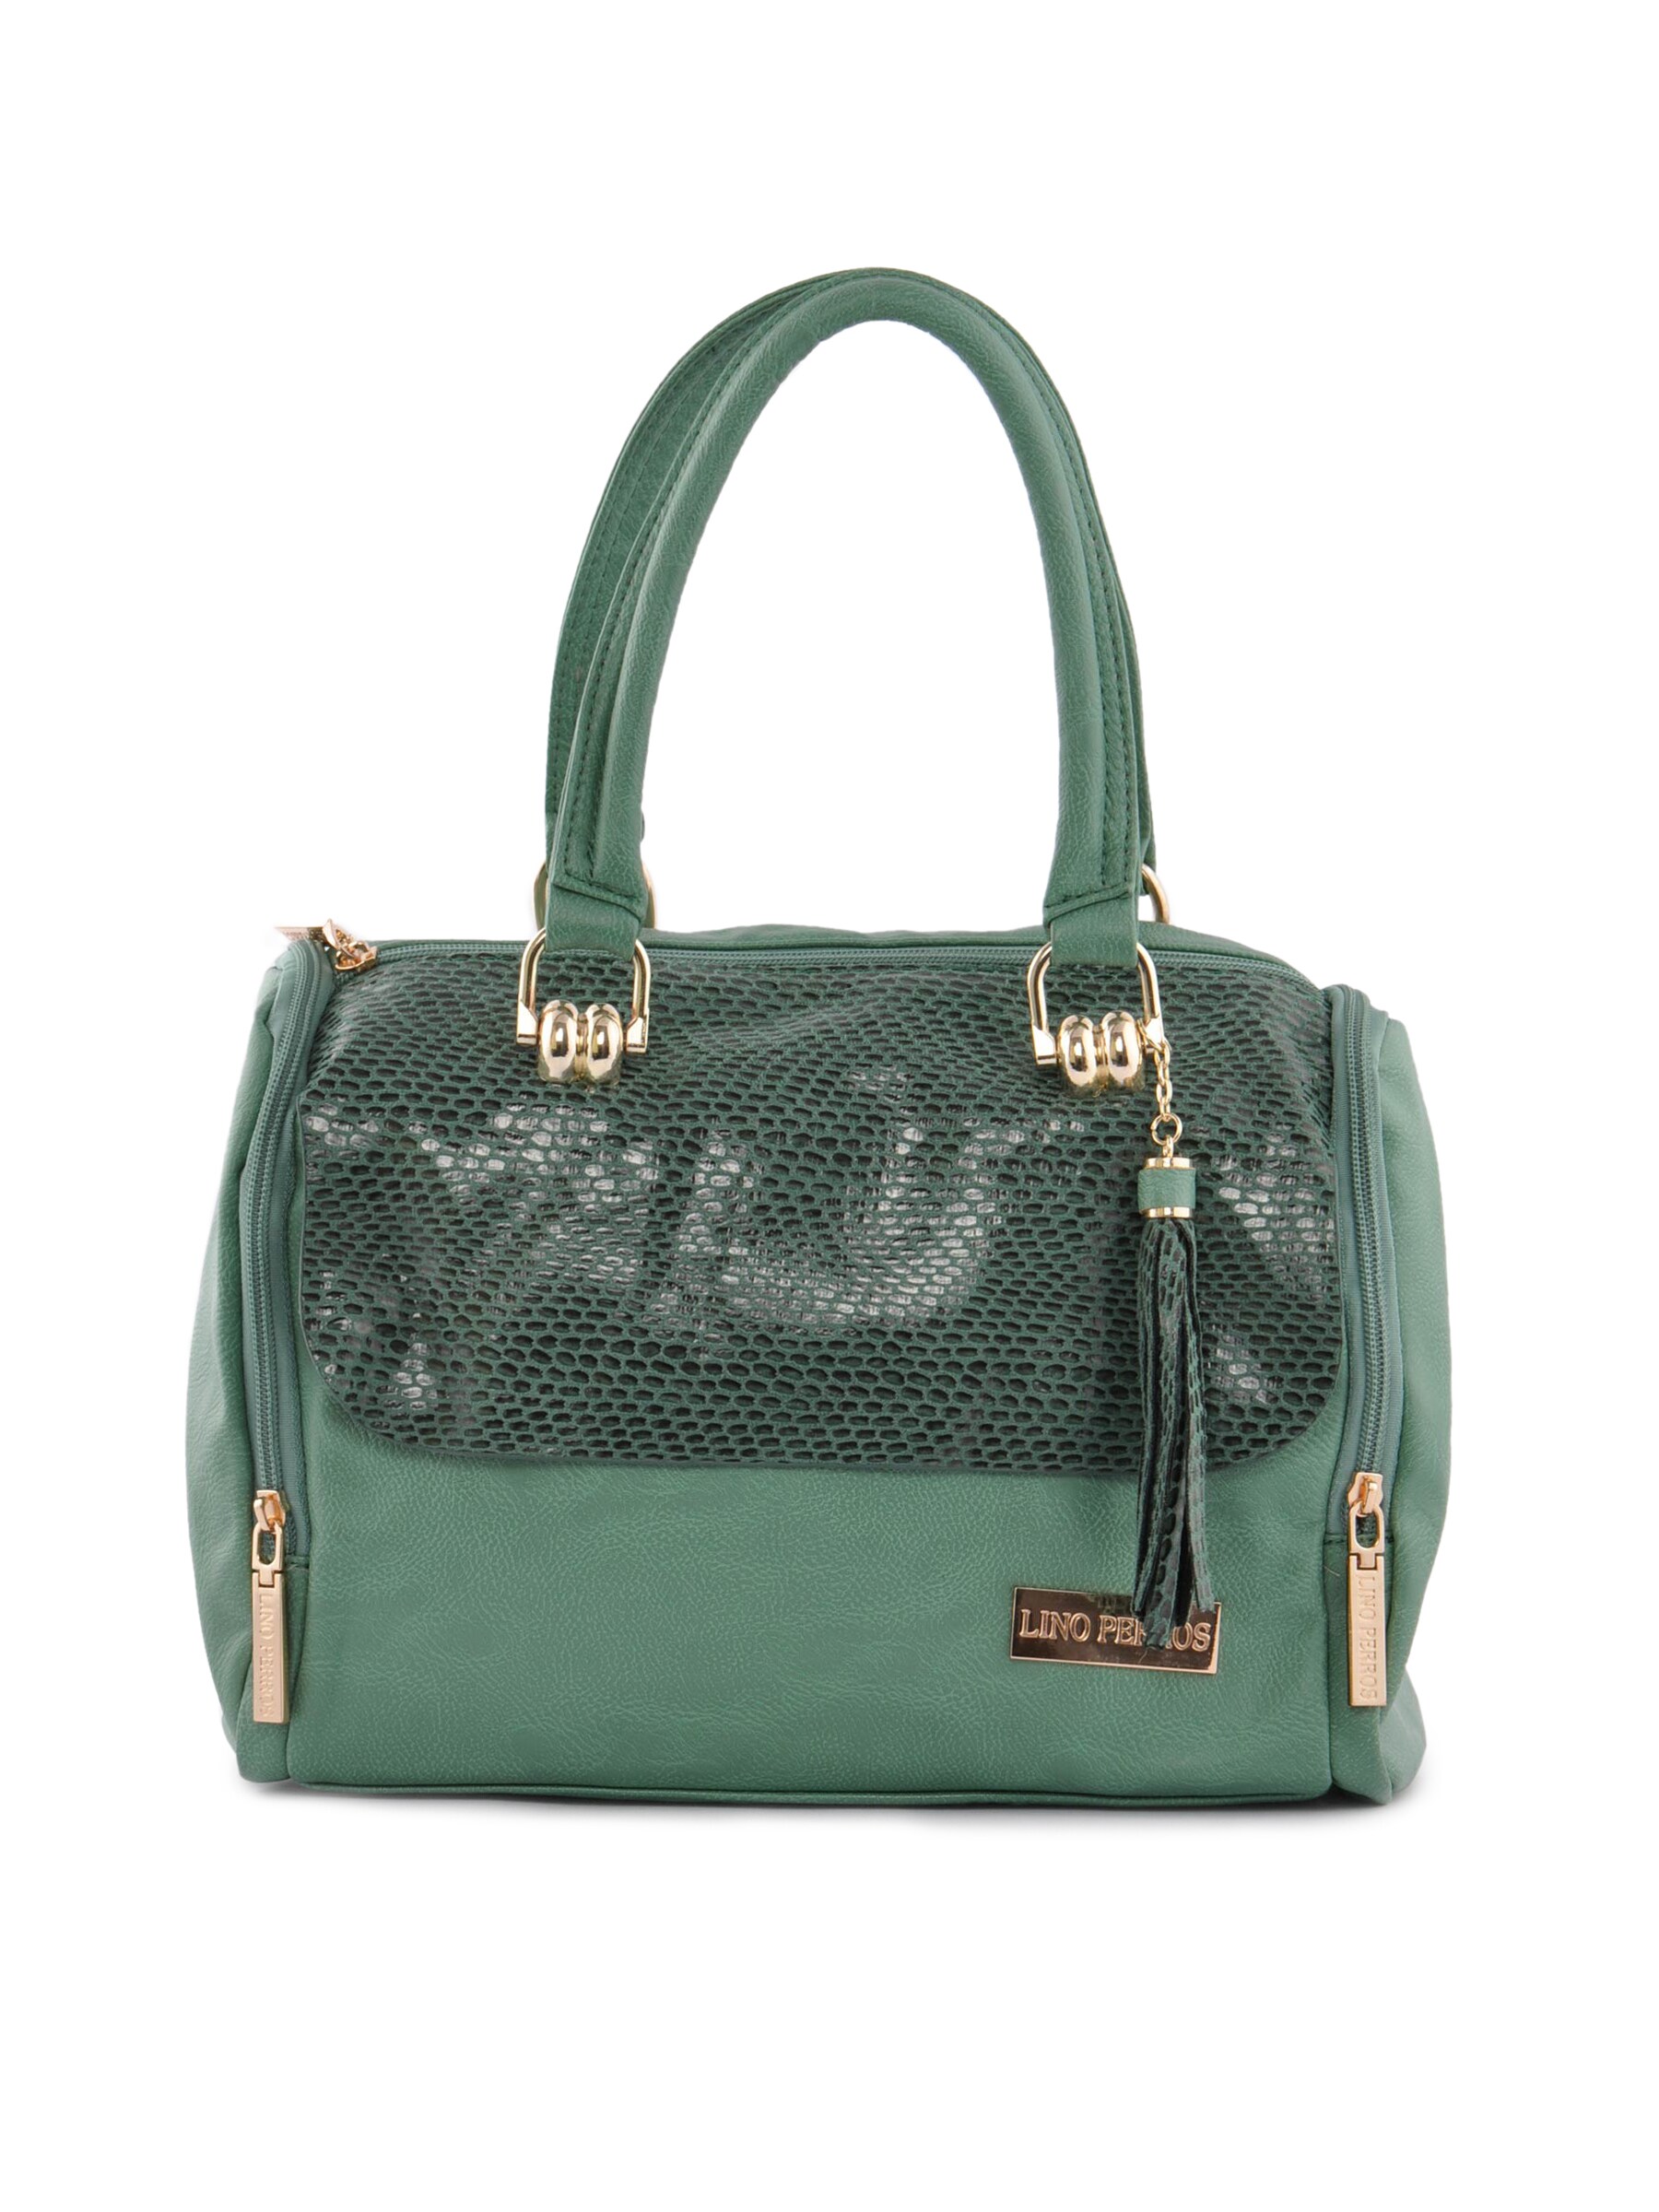 Lino Perros Women Snake Skin Look Green Handbag